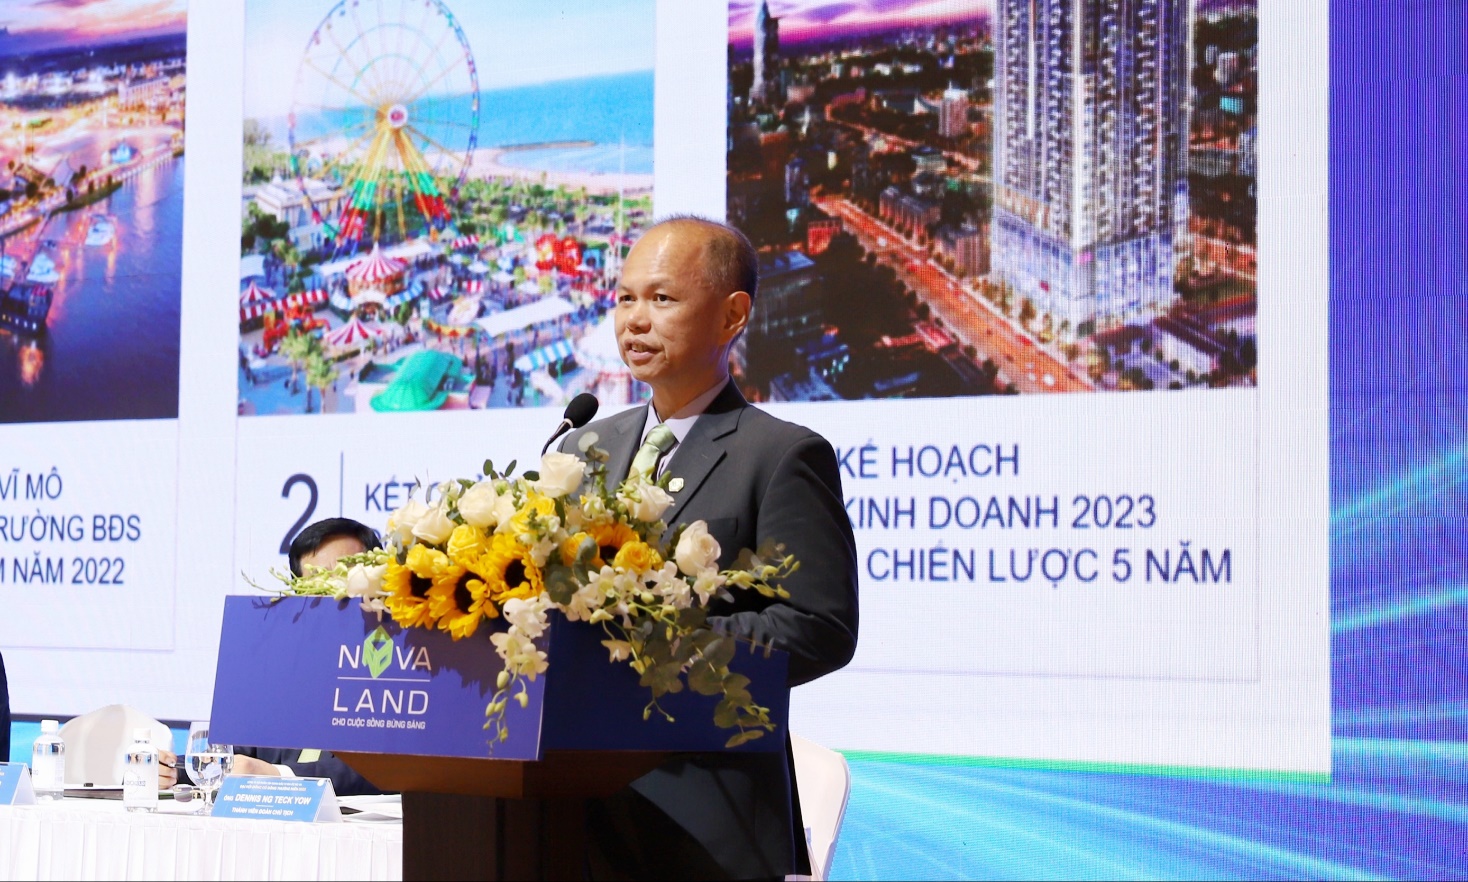 Chia sẻ ruột gan của Chủ tịch Novaland Bùi Thành Nhơn tại Đại hội đồng cổ đông 2023 ở Phan Thiết - Ảnh 4.